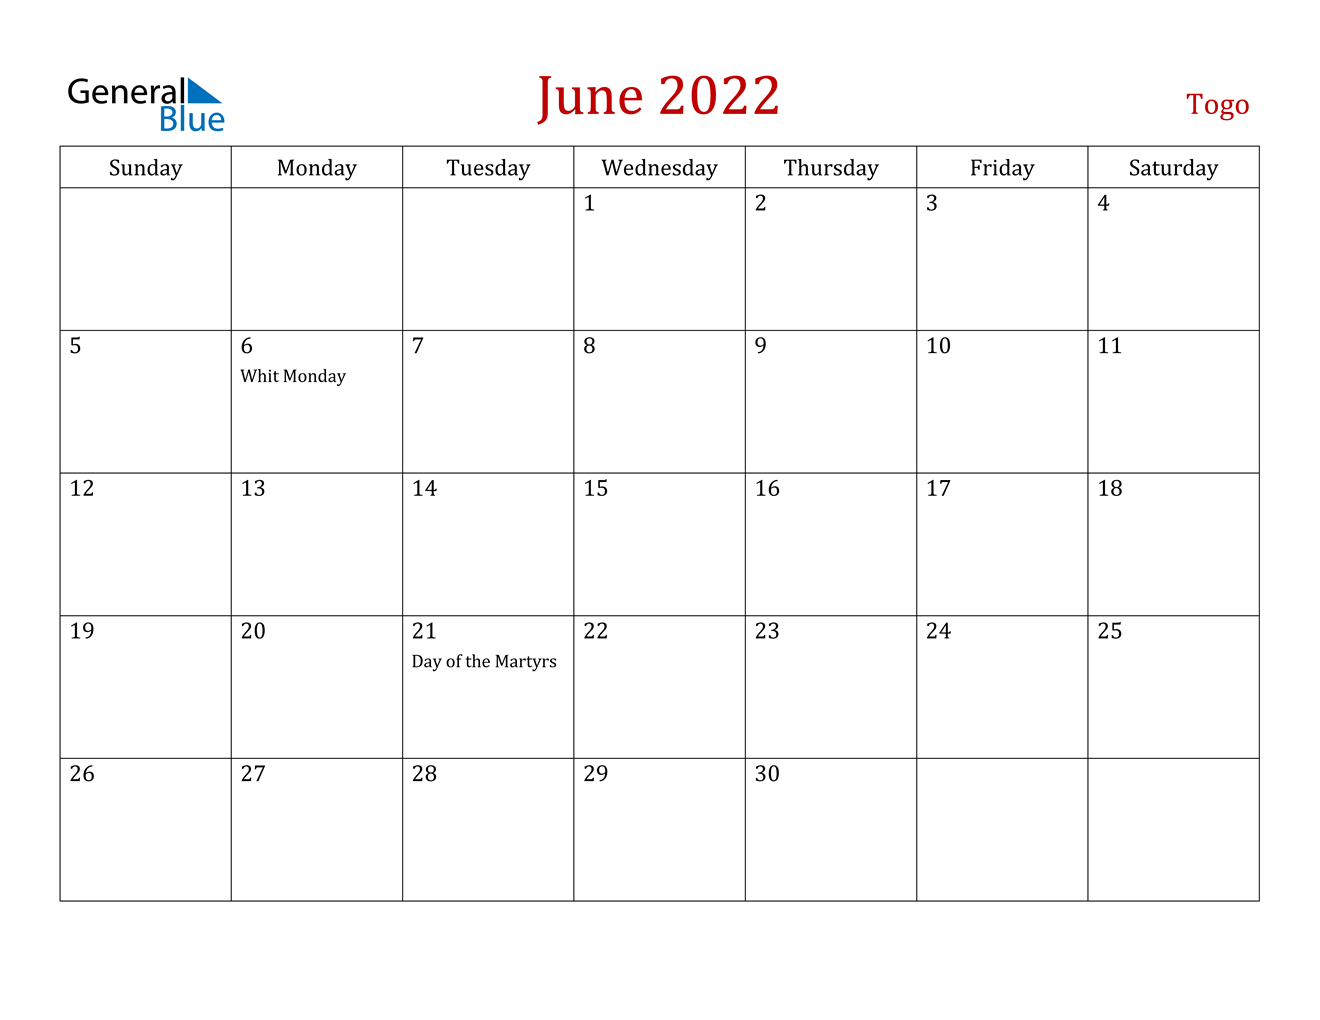 June 2022 Calendar - Togo